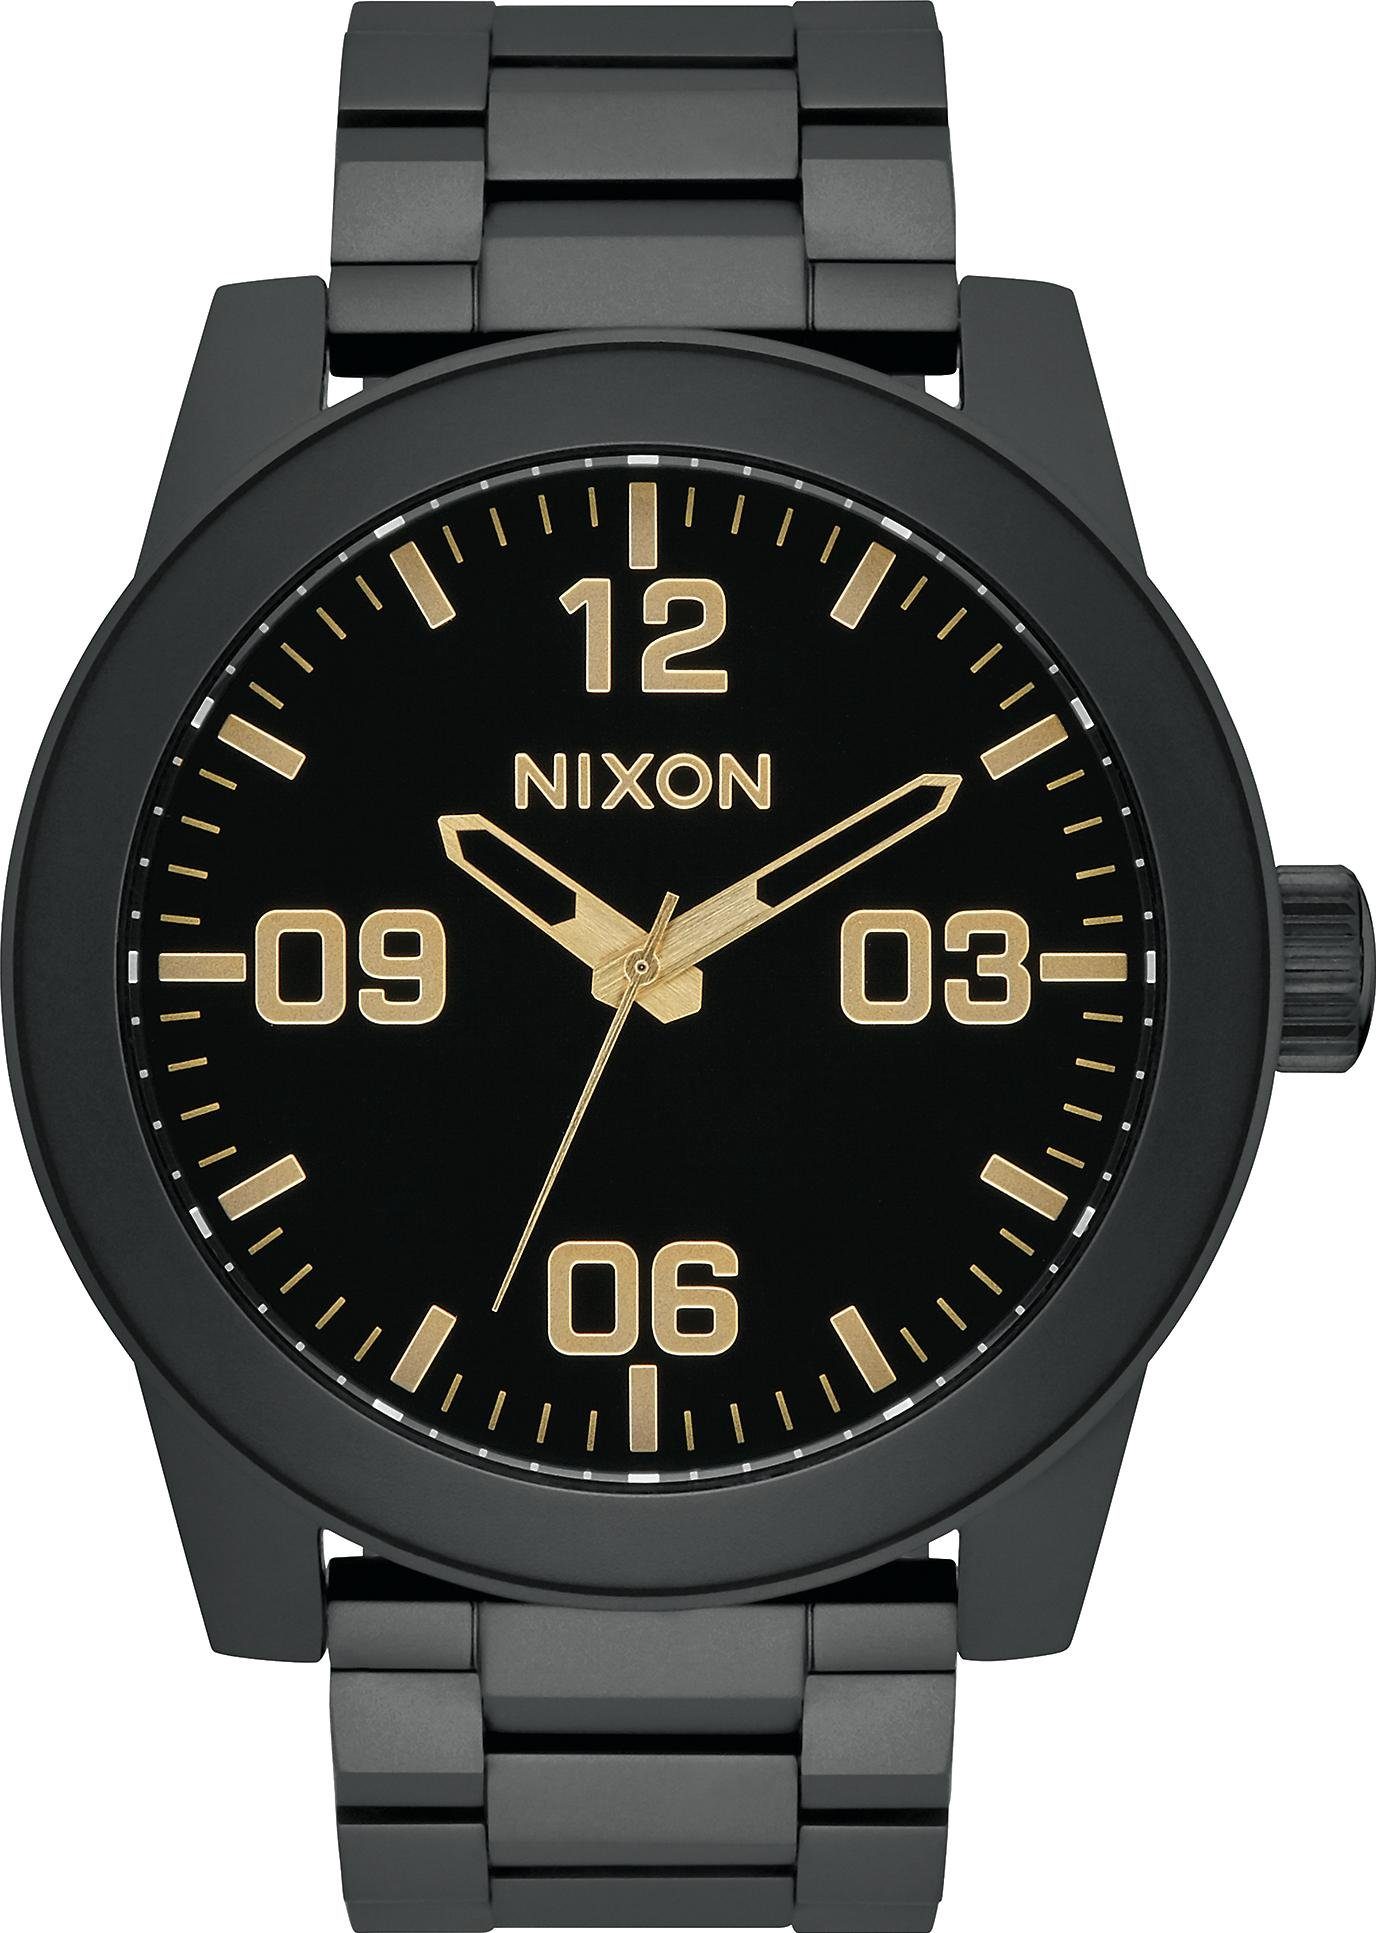 Herren Uhren Nixon Quarzuhr Nixon Corporal SS A346-1041 Herrenarmbanduhr